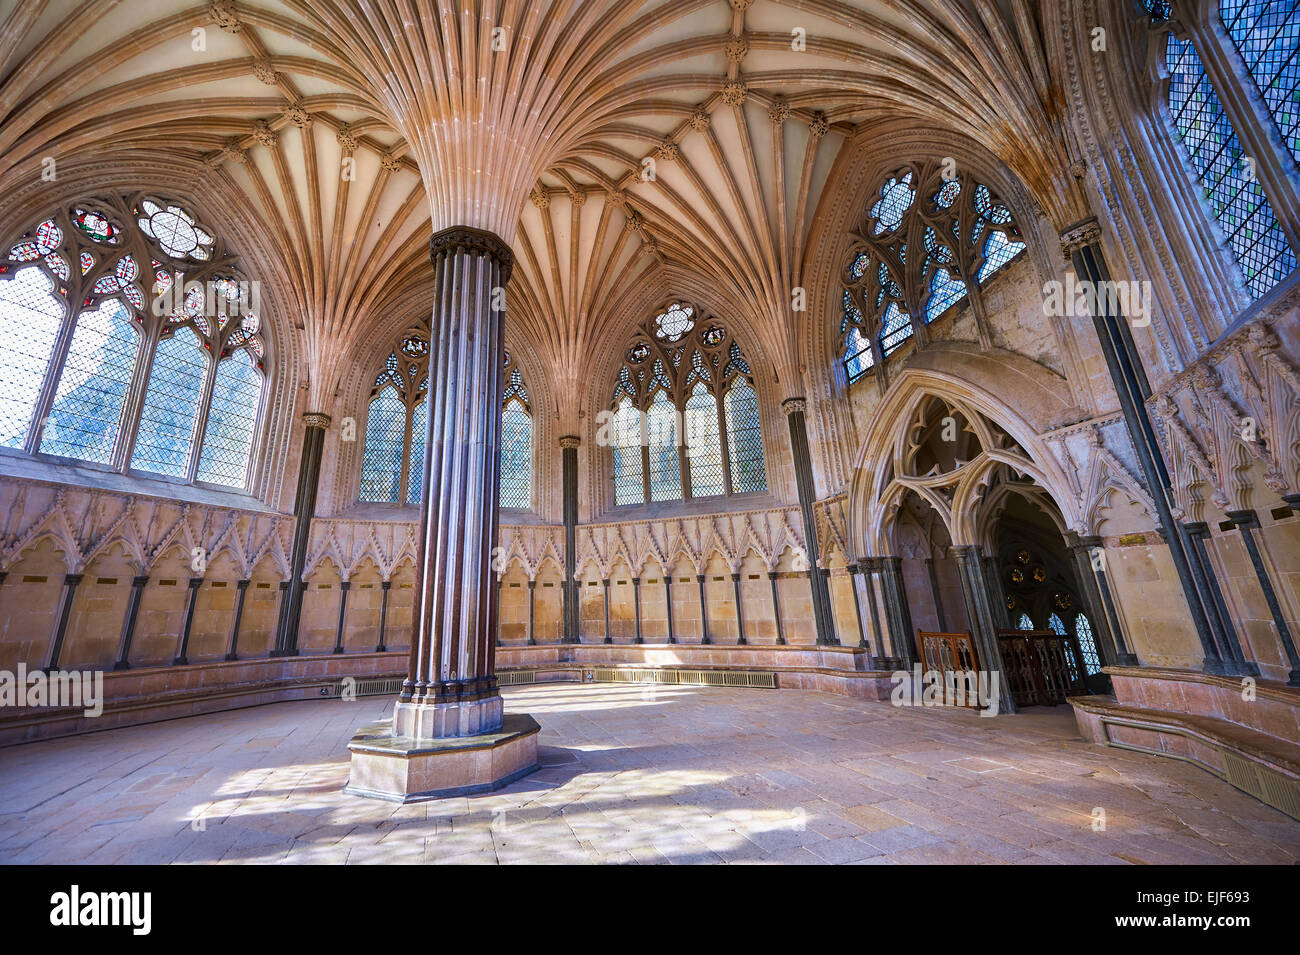 Die gewölbte Decke der Kapitelsaal der mittelalterlichen Brunnen-Kathedrale gebaut in den frühen englischen gotischen Stil im Jahre 1175, Brunnen Stockfoto